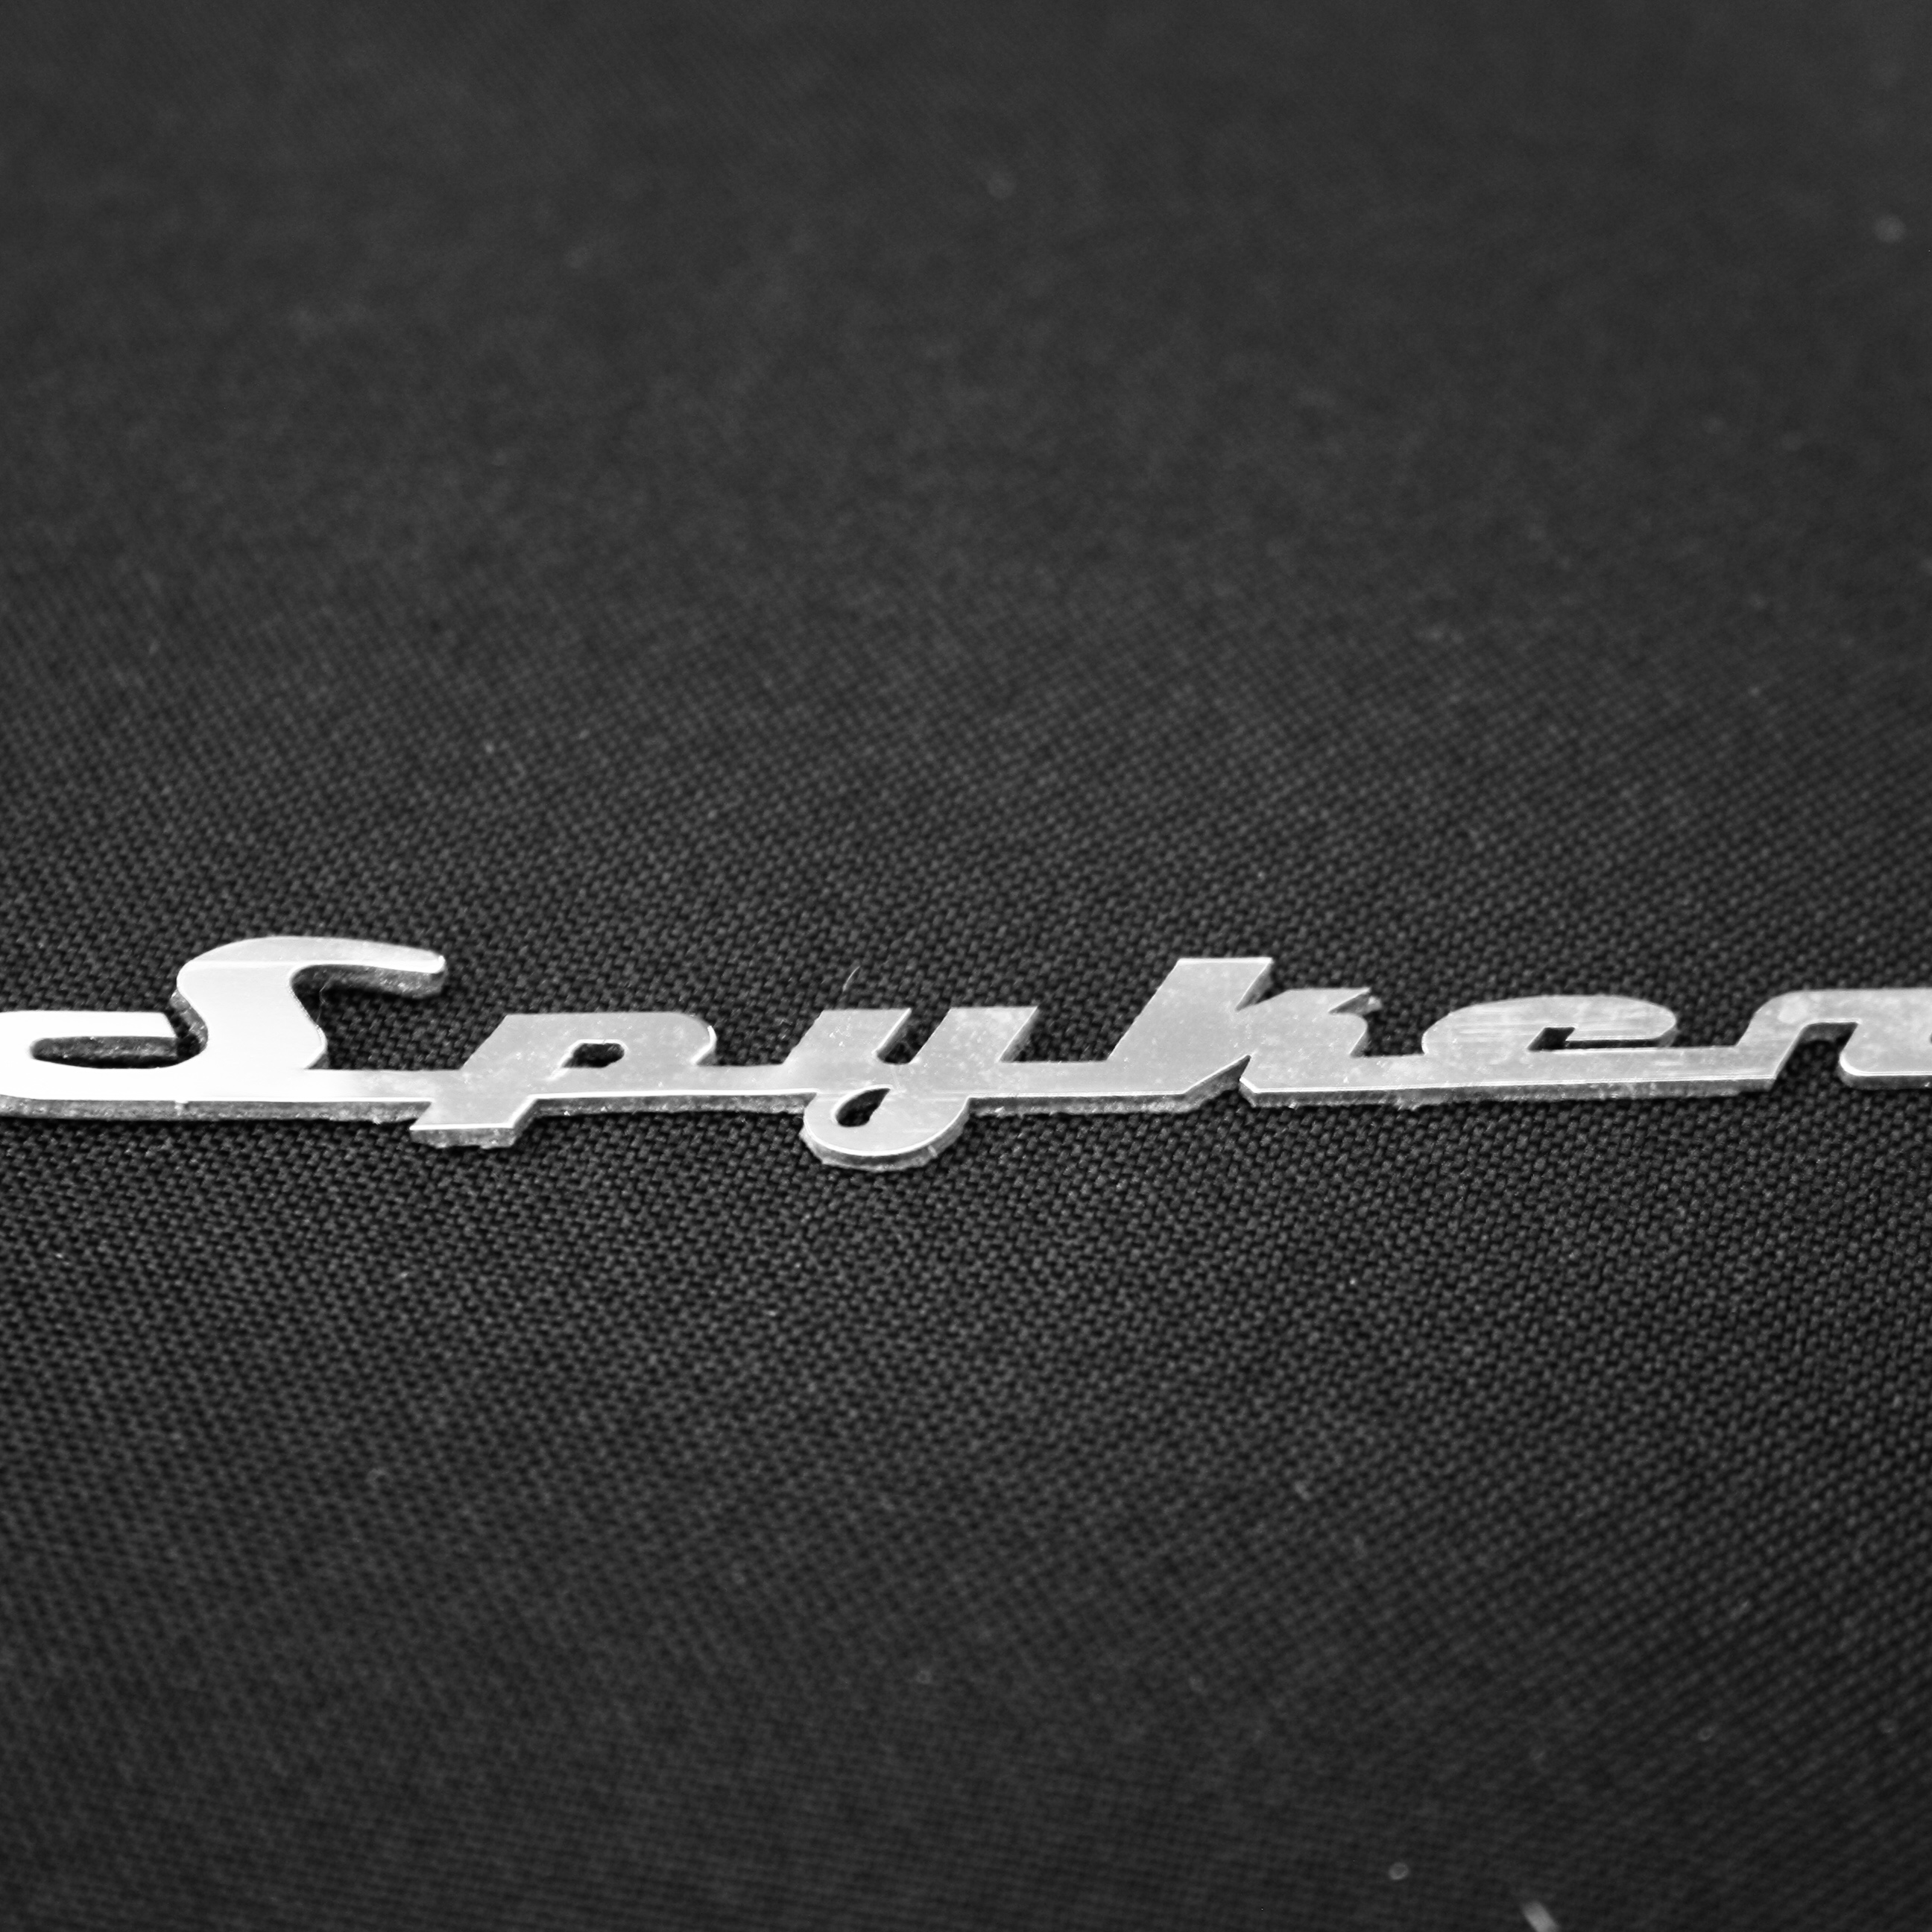 Logo</br>Spyker